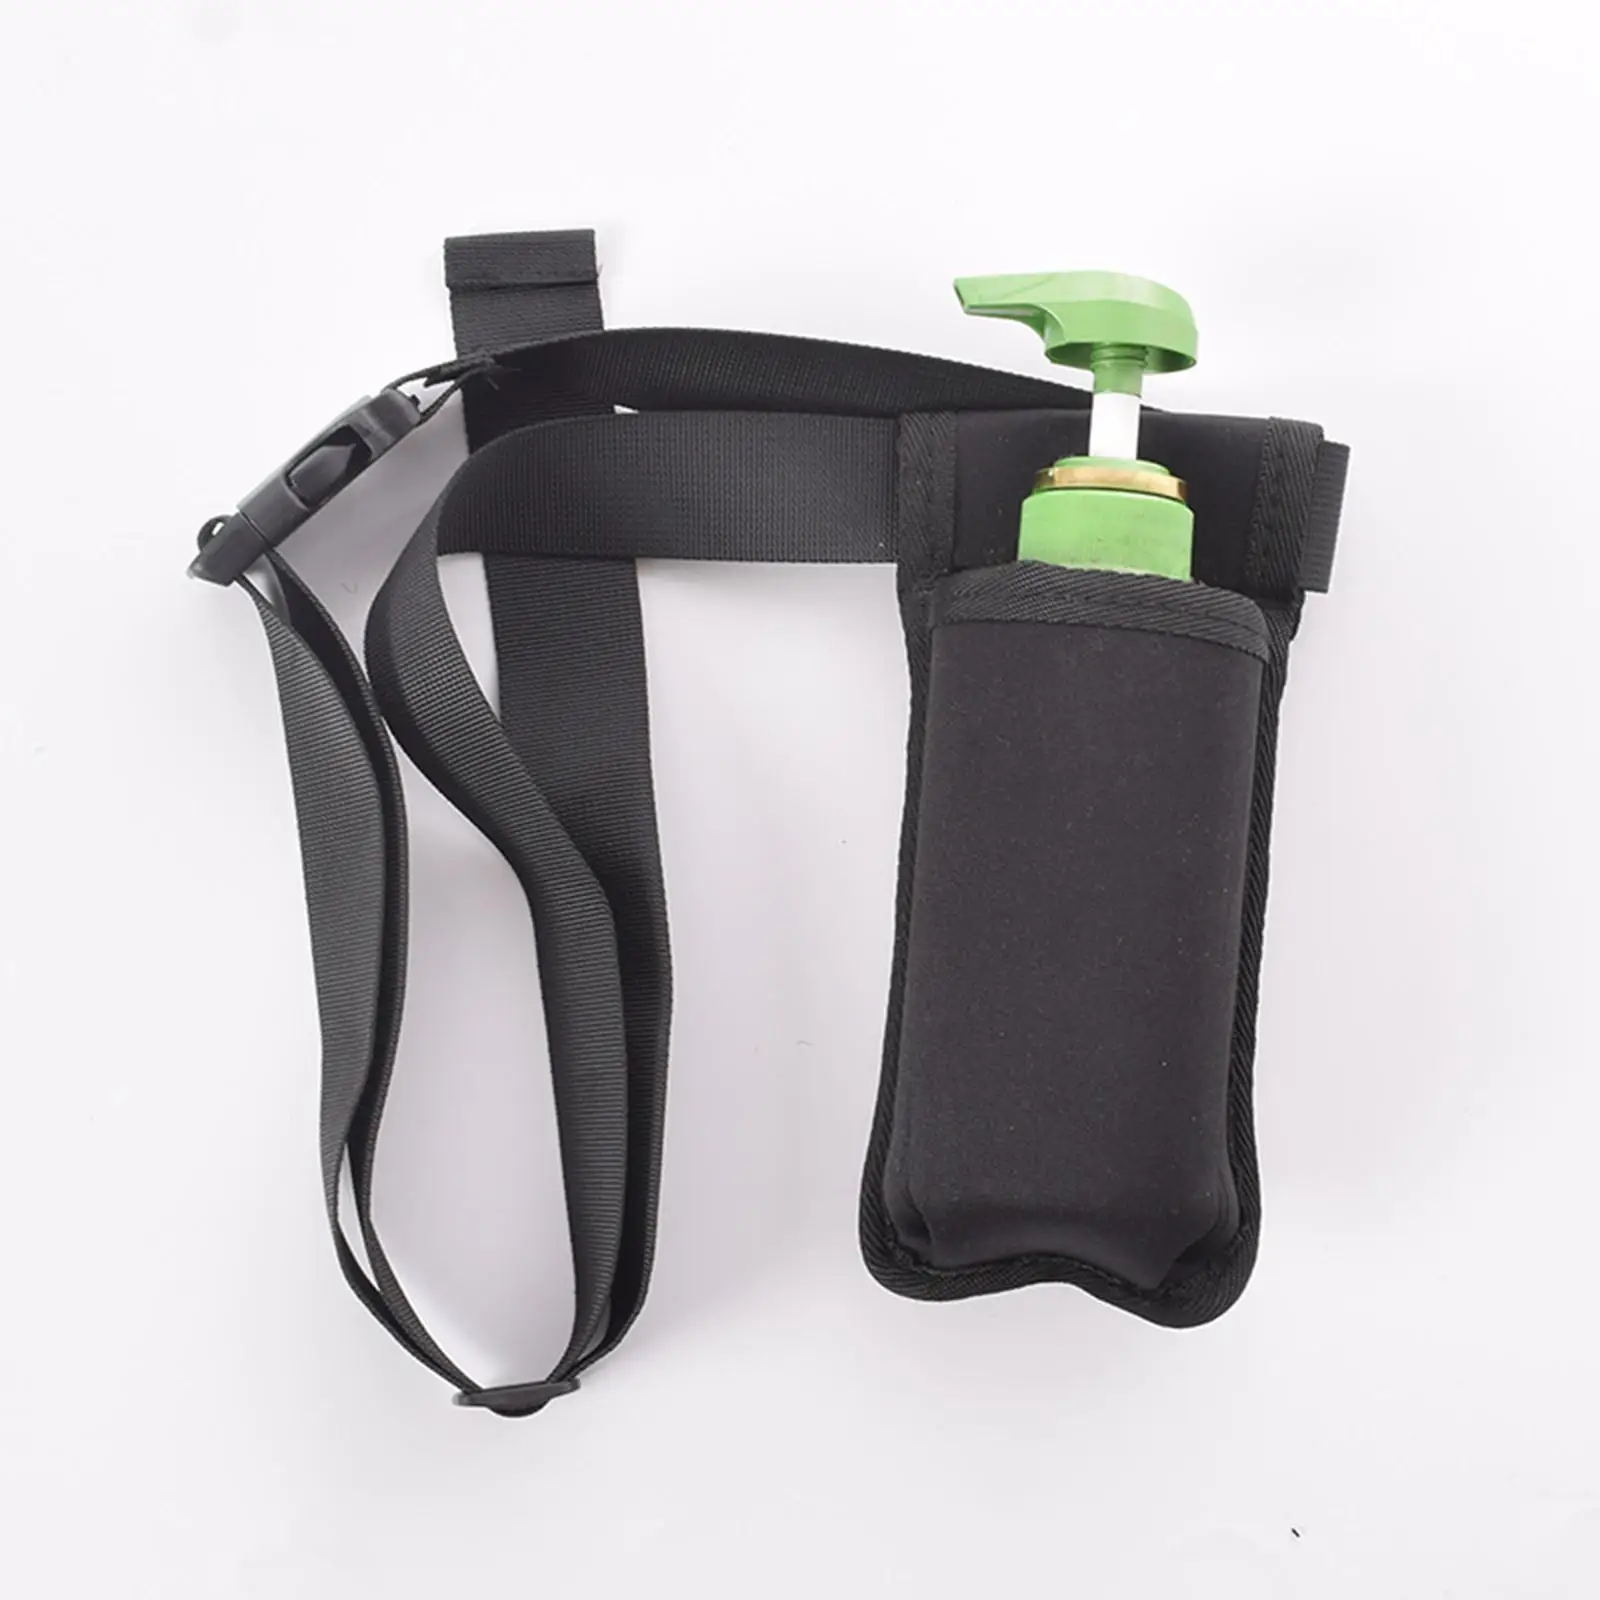 Single Massage Bottle Holster Waist Hanging Portable for Massage Oil Pump Bottle Adjustable Length Soft Comfortable Protect Case